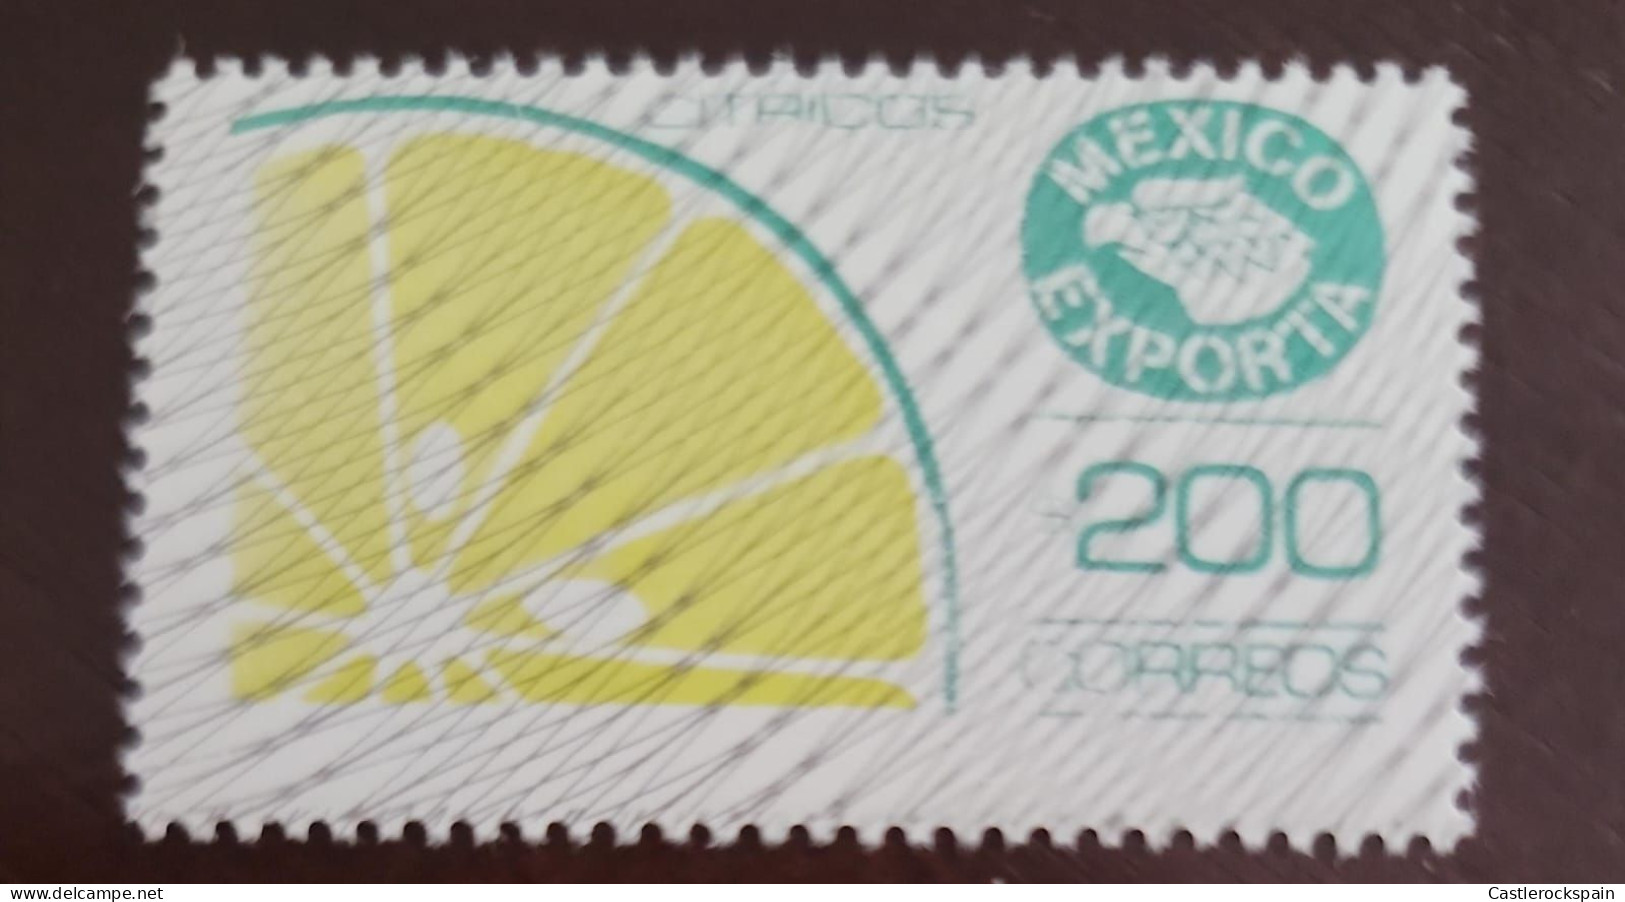 O) 1988 MEXICO, ERROR, MEXICO EXPORTA  CITRUS FRUIT,  CITRUS, FOOD AND MEDICINAL, MNH - Mexico